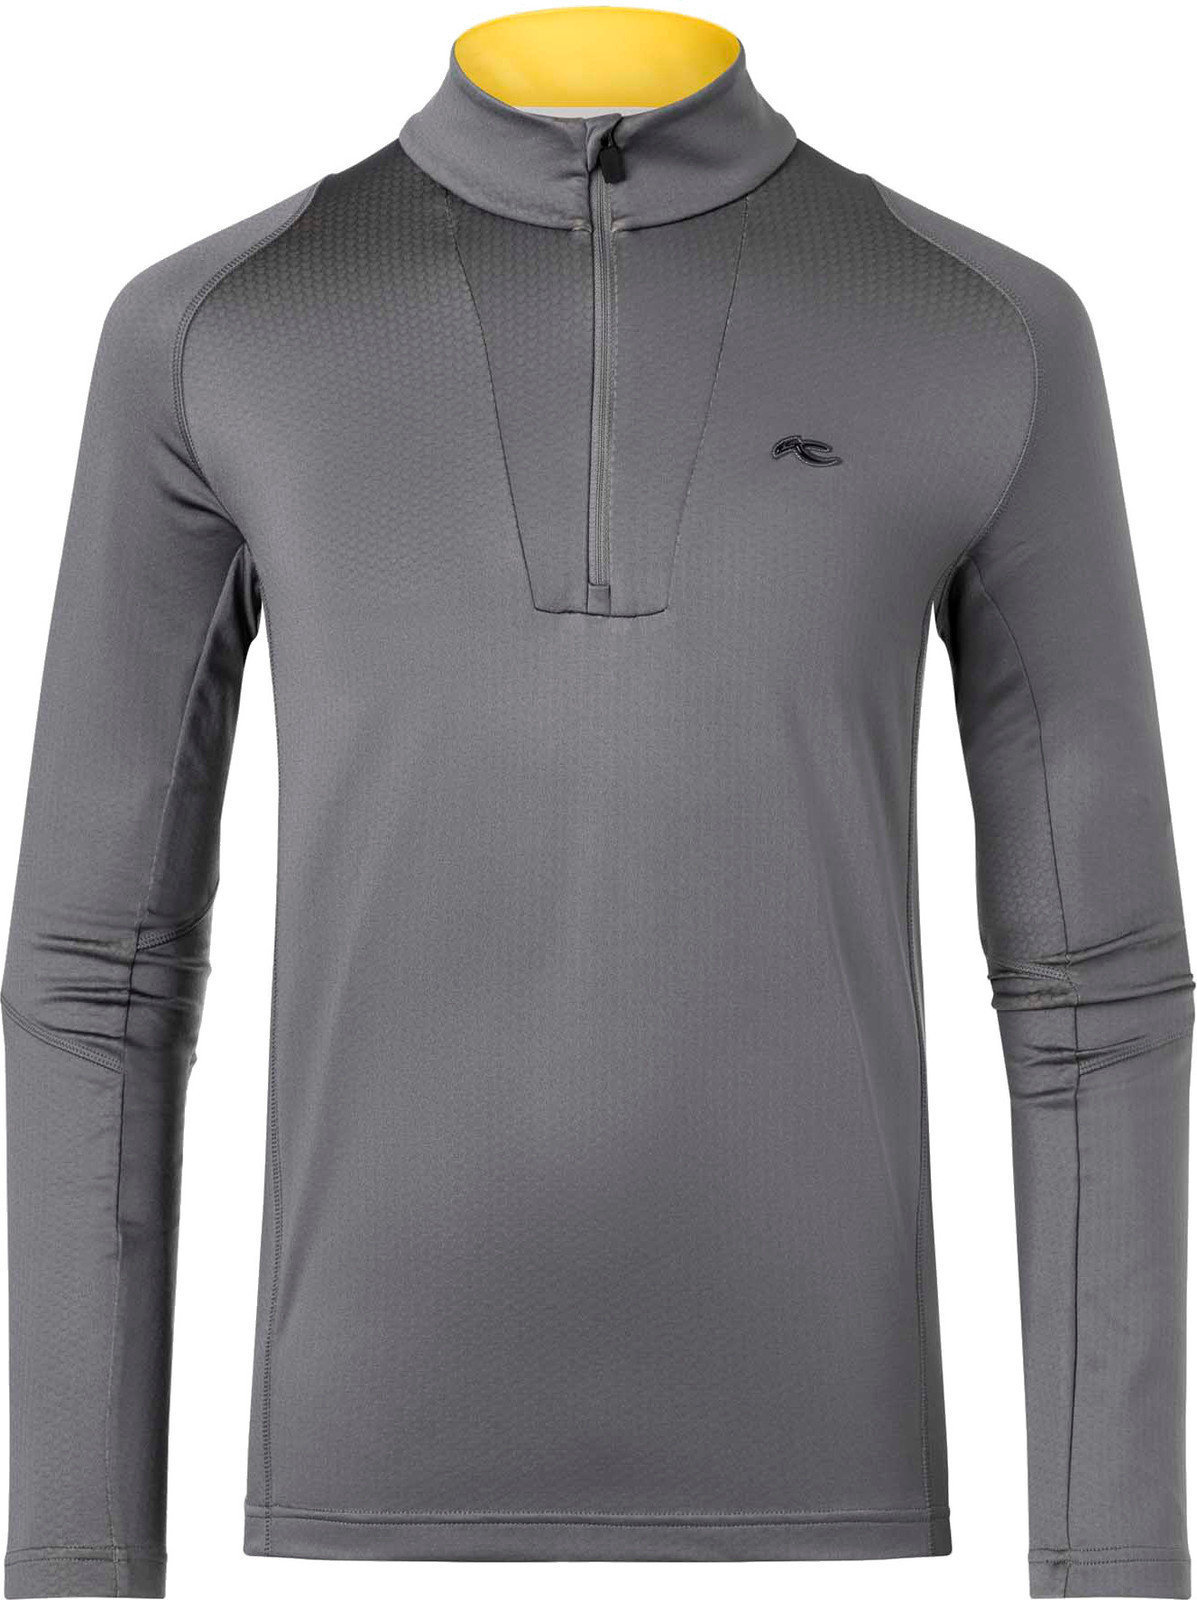 T-shirt/casaco com capuz para esqui Kjus Speed Reader Mens Midlayer HZ Steel Grey 54